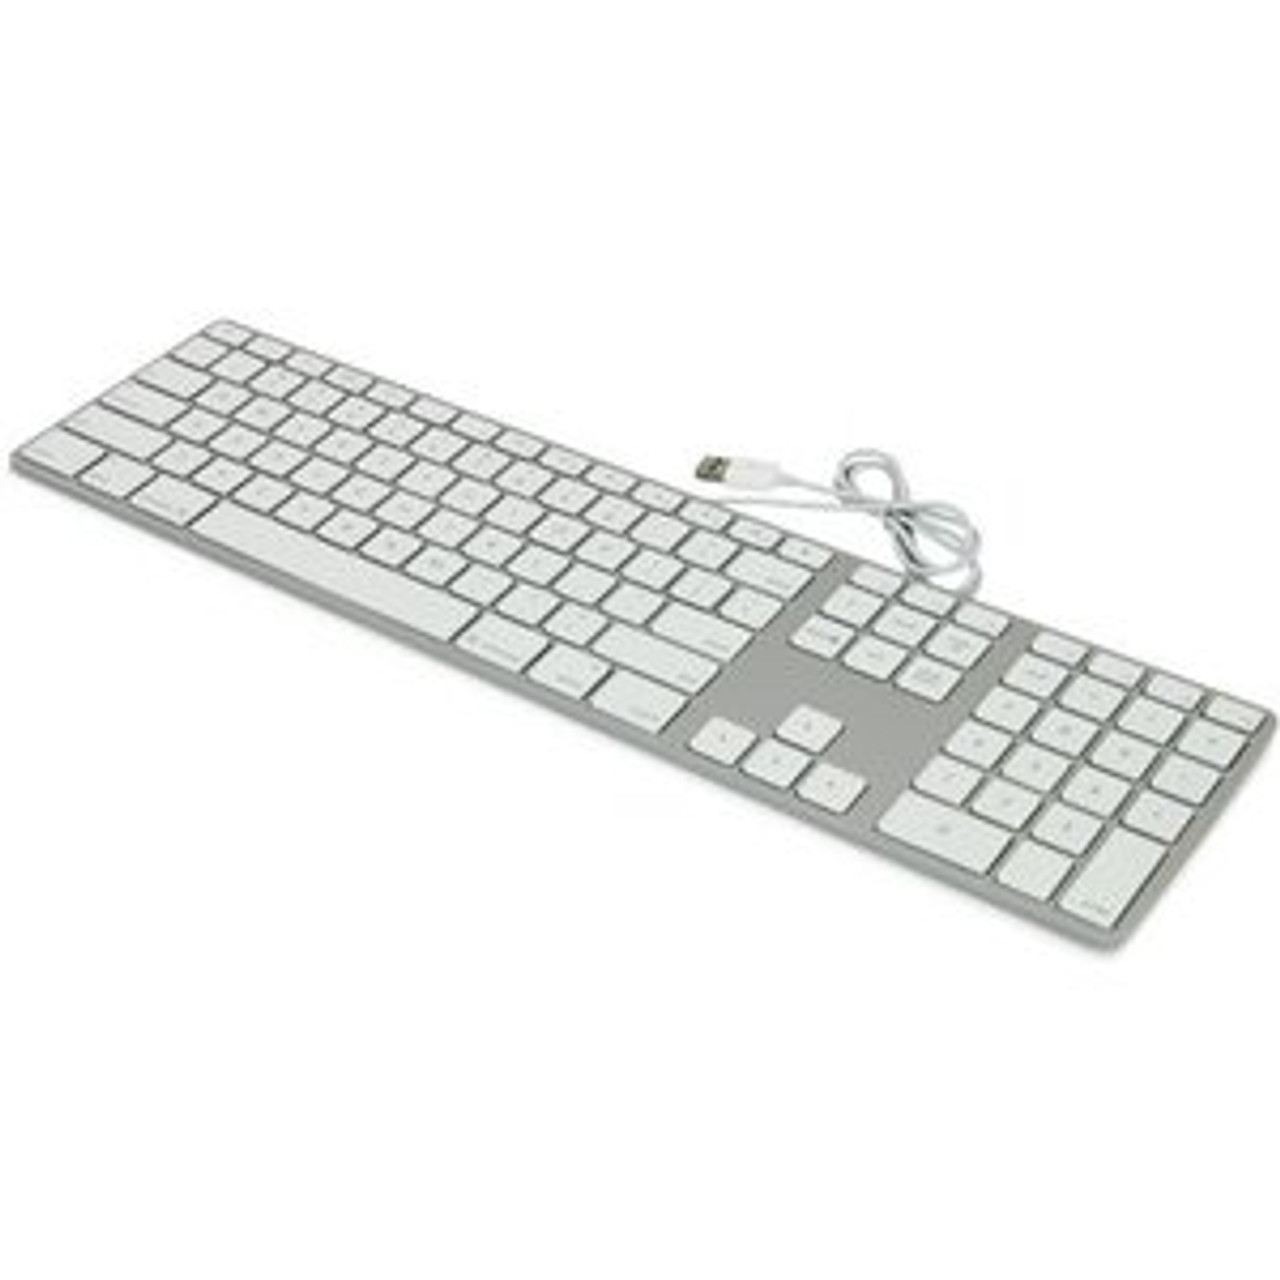 OWC Apple Keyboard with Numeric Keypad